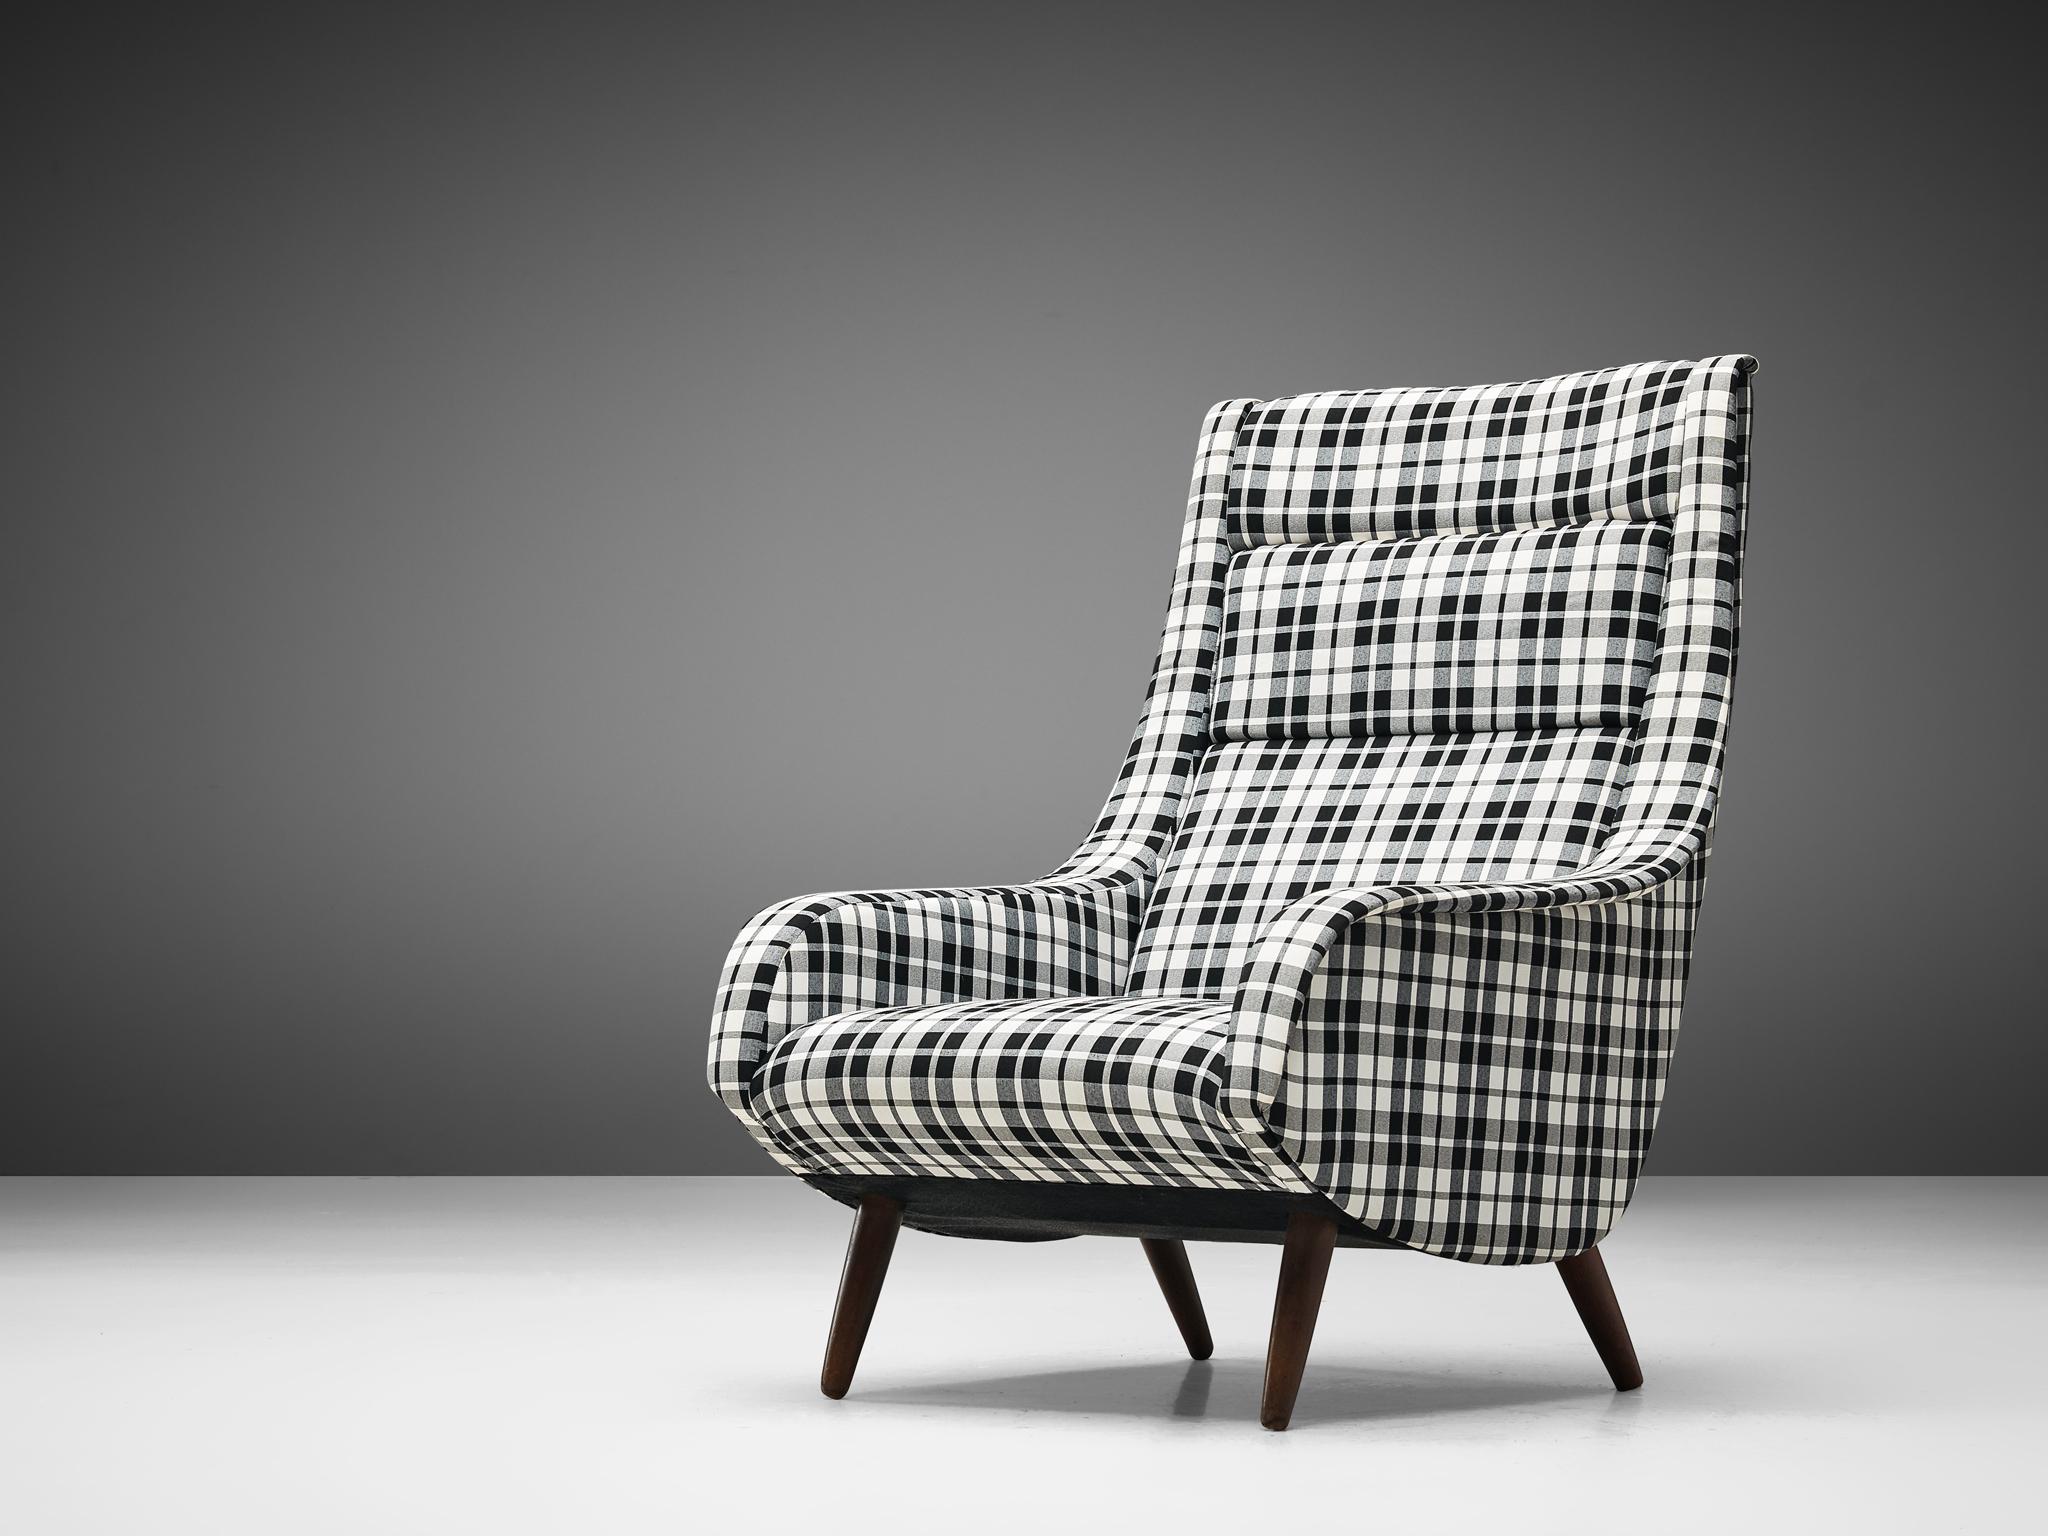 Chaise longue, tissu, bois, Danemark, années 1960
 
Ce fauteuil invite à y passer plus de temps grâce à son dossier imposant et haut, légèrement incliné. La présence d'accoudoirs permet d'allonger les bras confortablement. Les cadres extérieurs sont